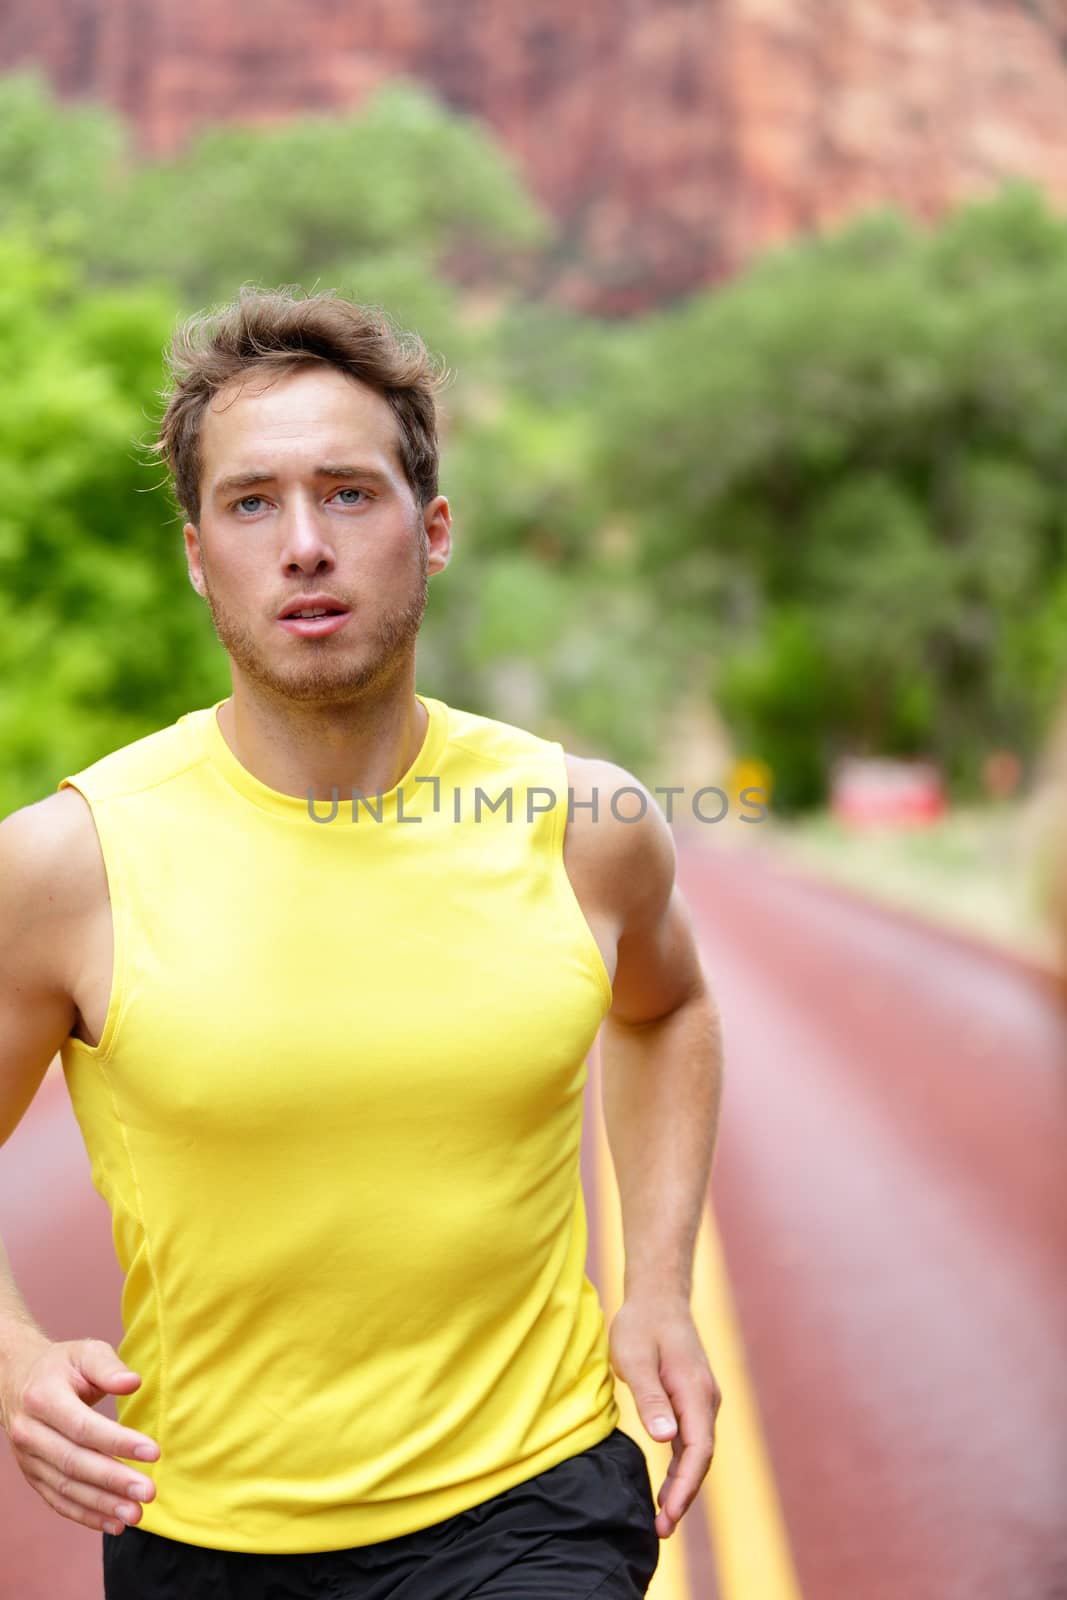 Fitness sport runner man running determined by Maridav